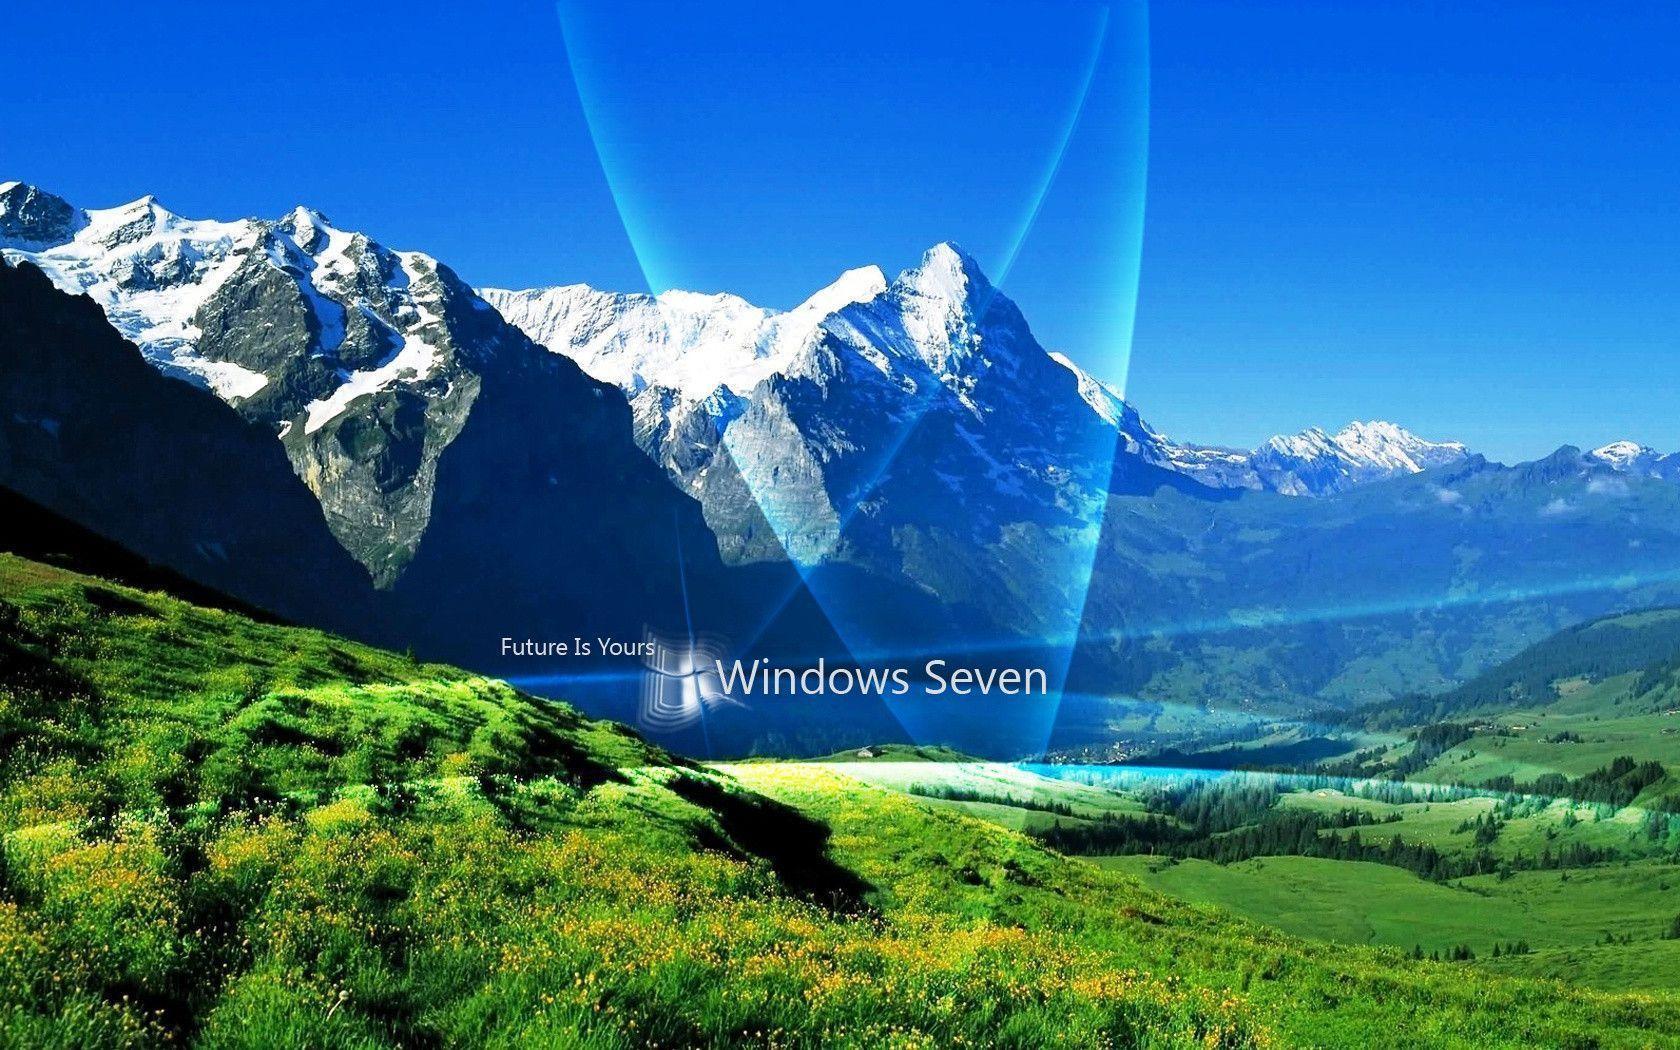 Windows 7 wallpaper full HD win 7 desktop background